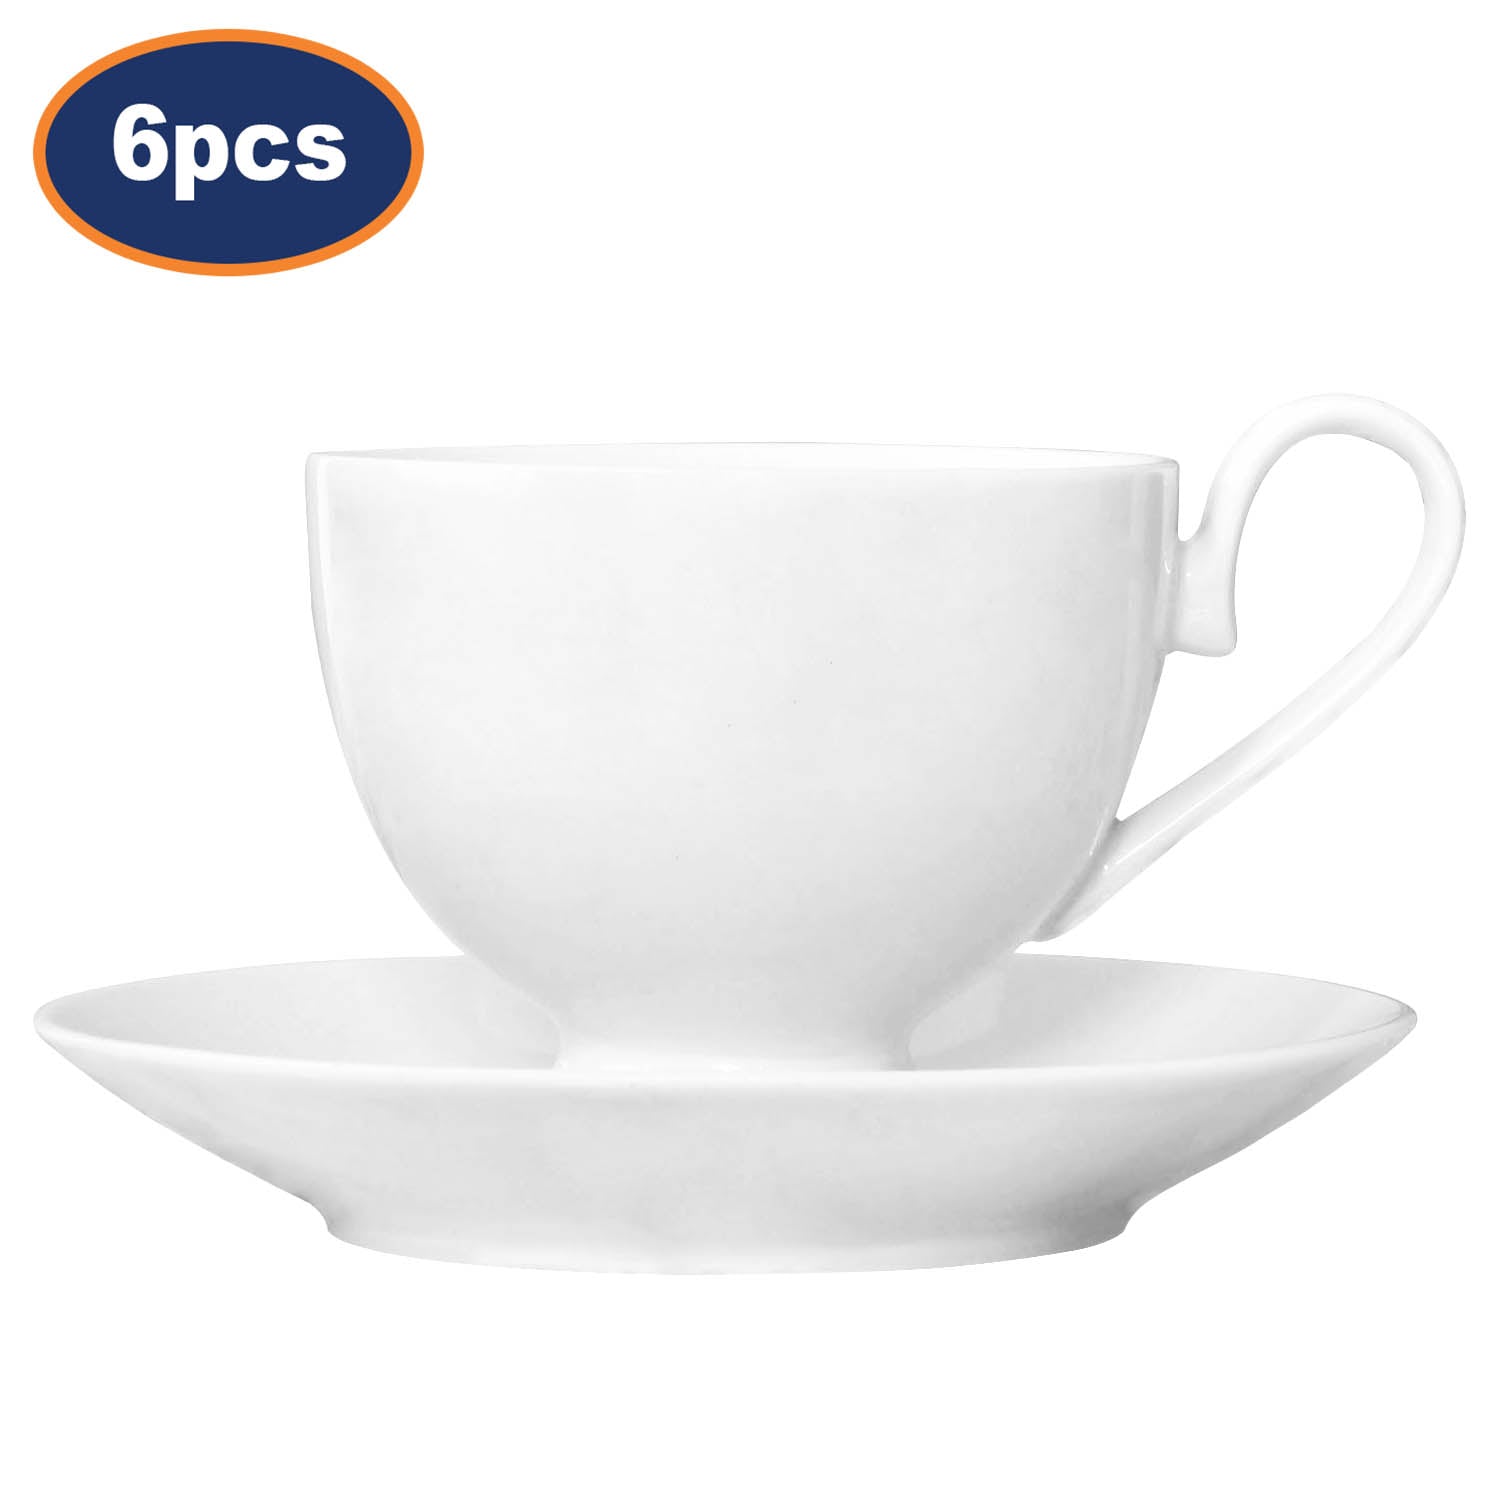 6Pcs 205ml White Porcelain Cup & Saucer Sets